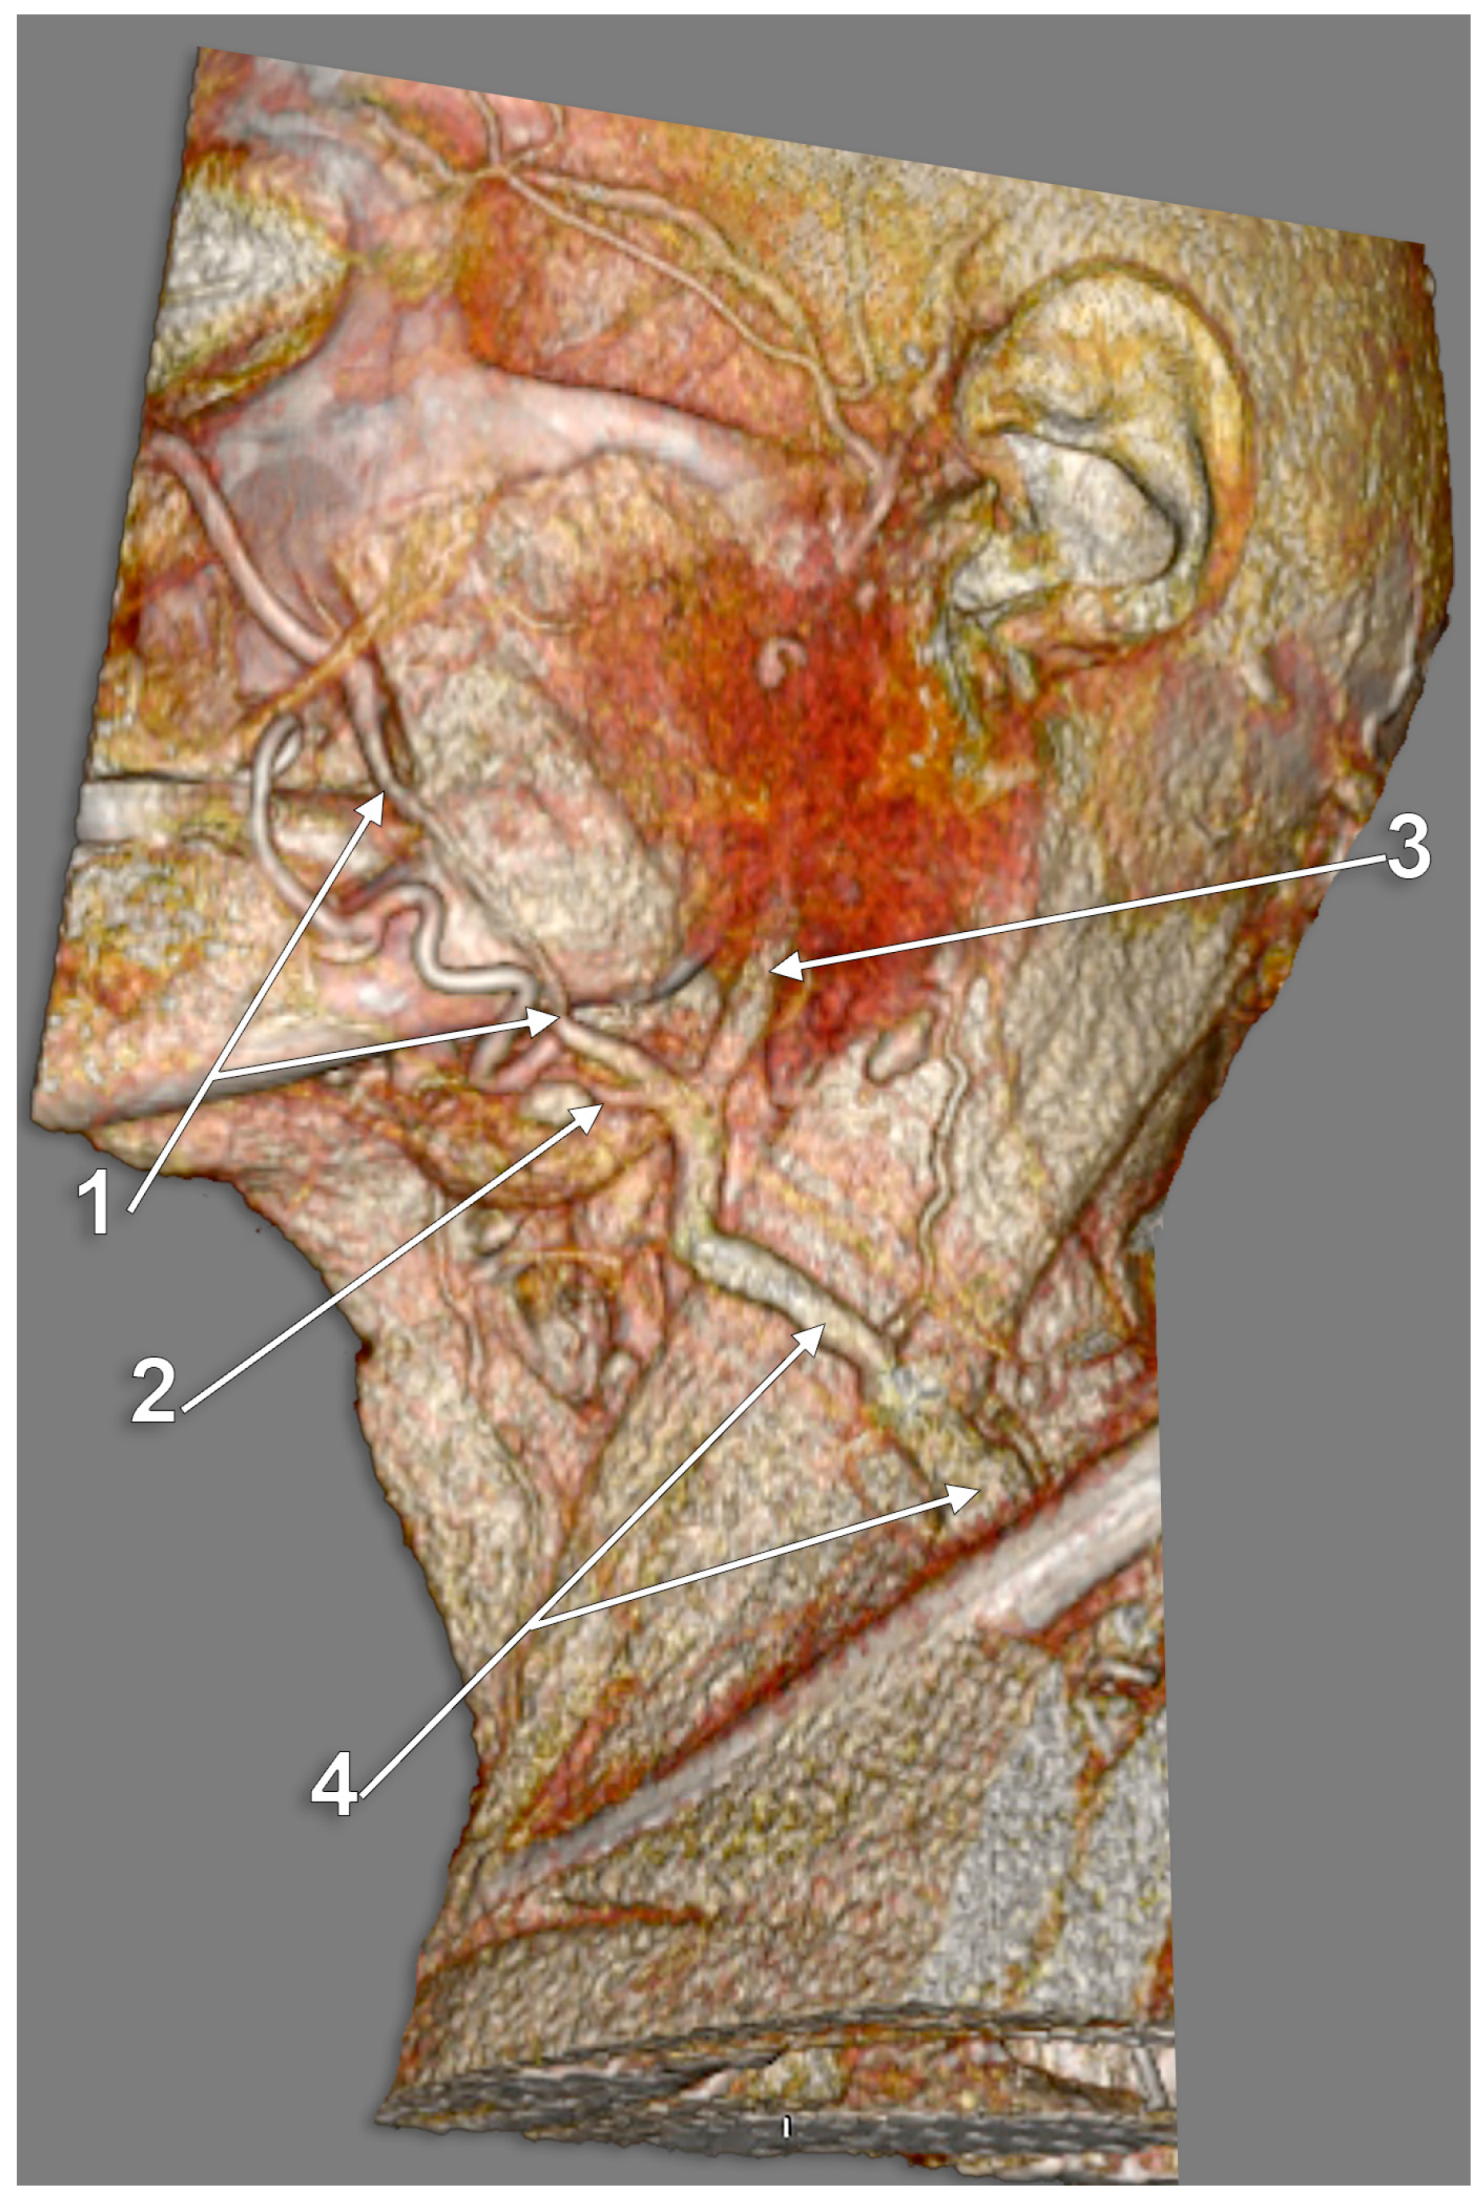 external jugular vein cadaver